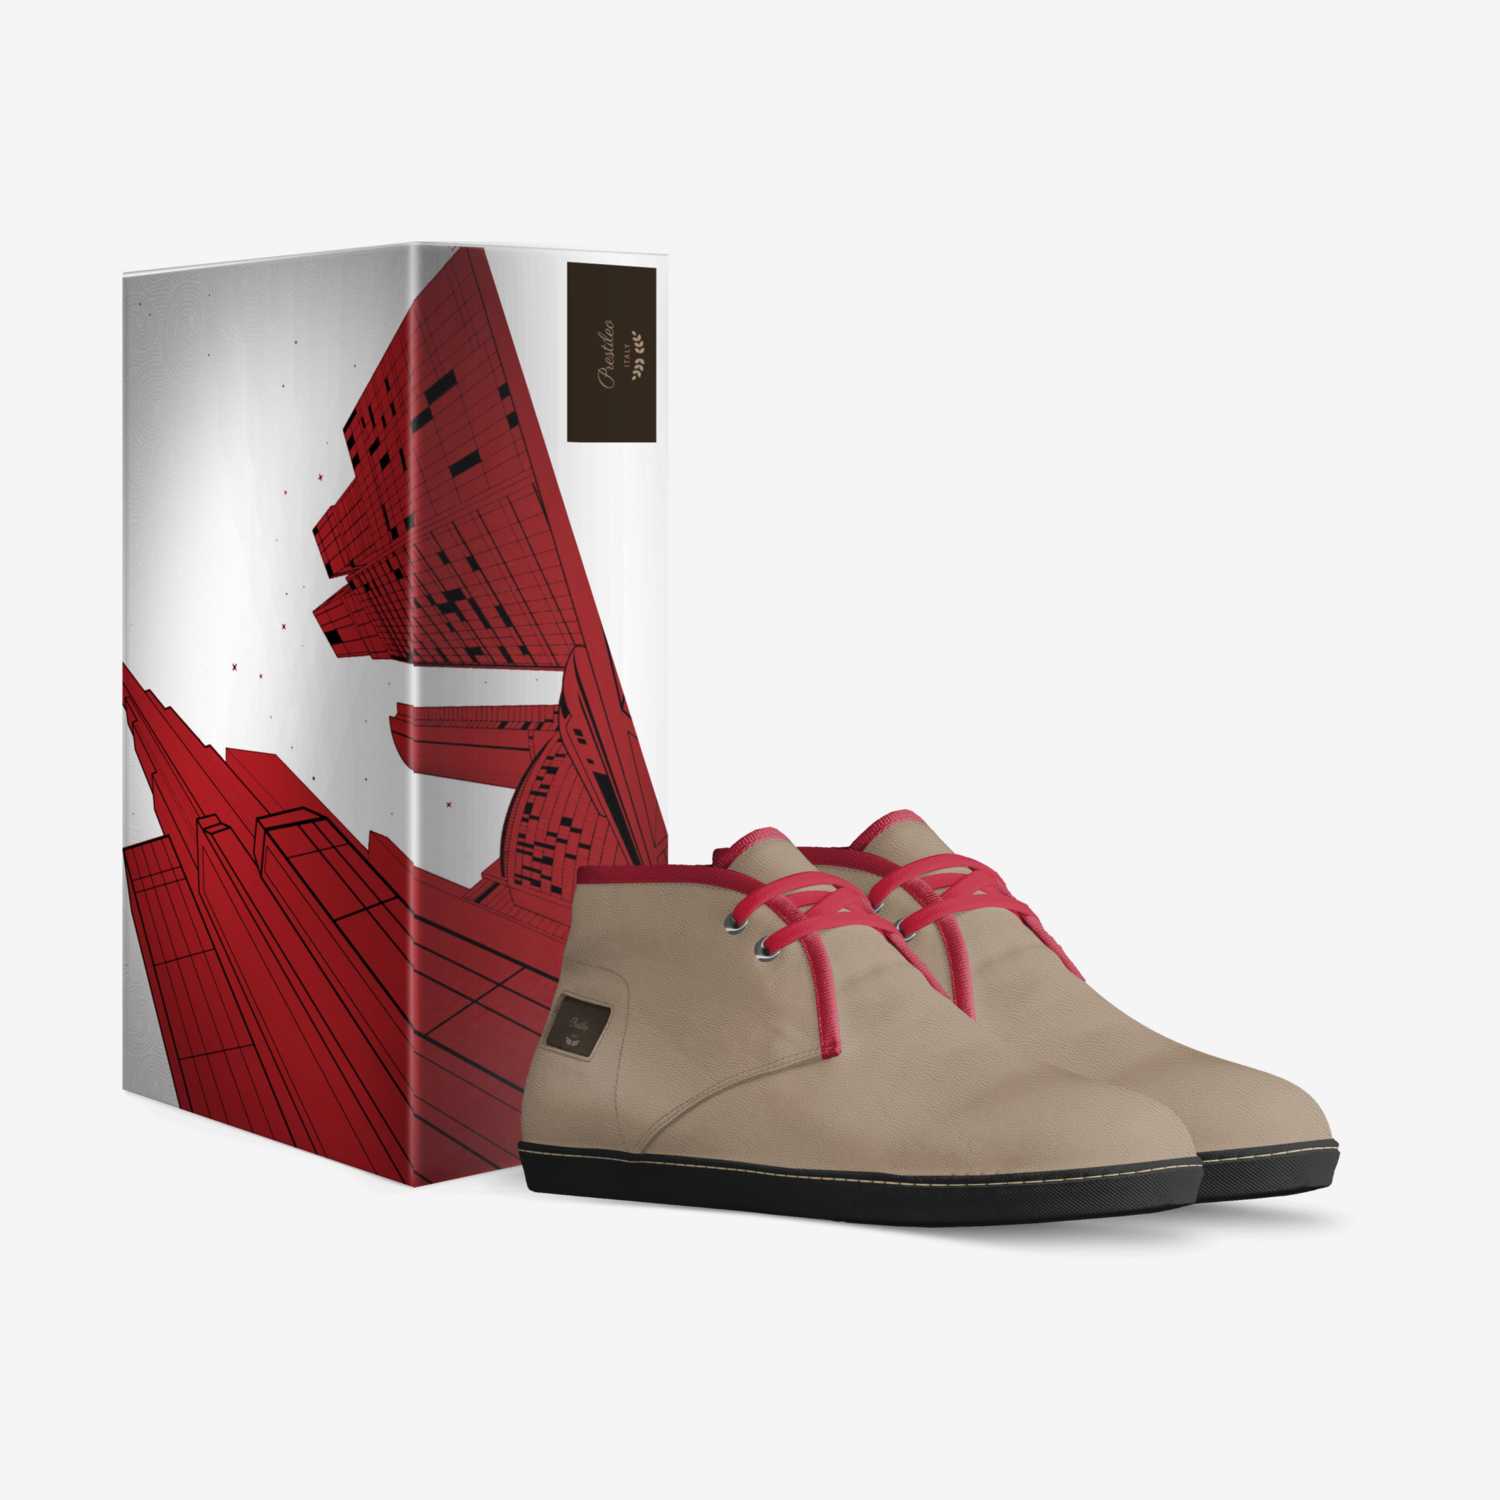 Prestileo custom made in Italy shoes by Prestileo8 | Box view